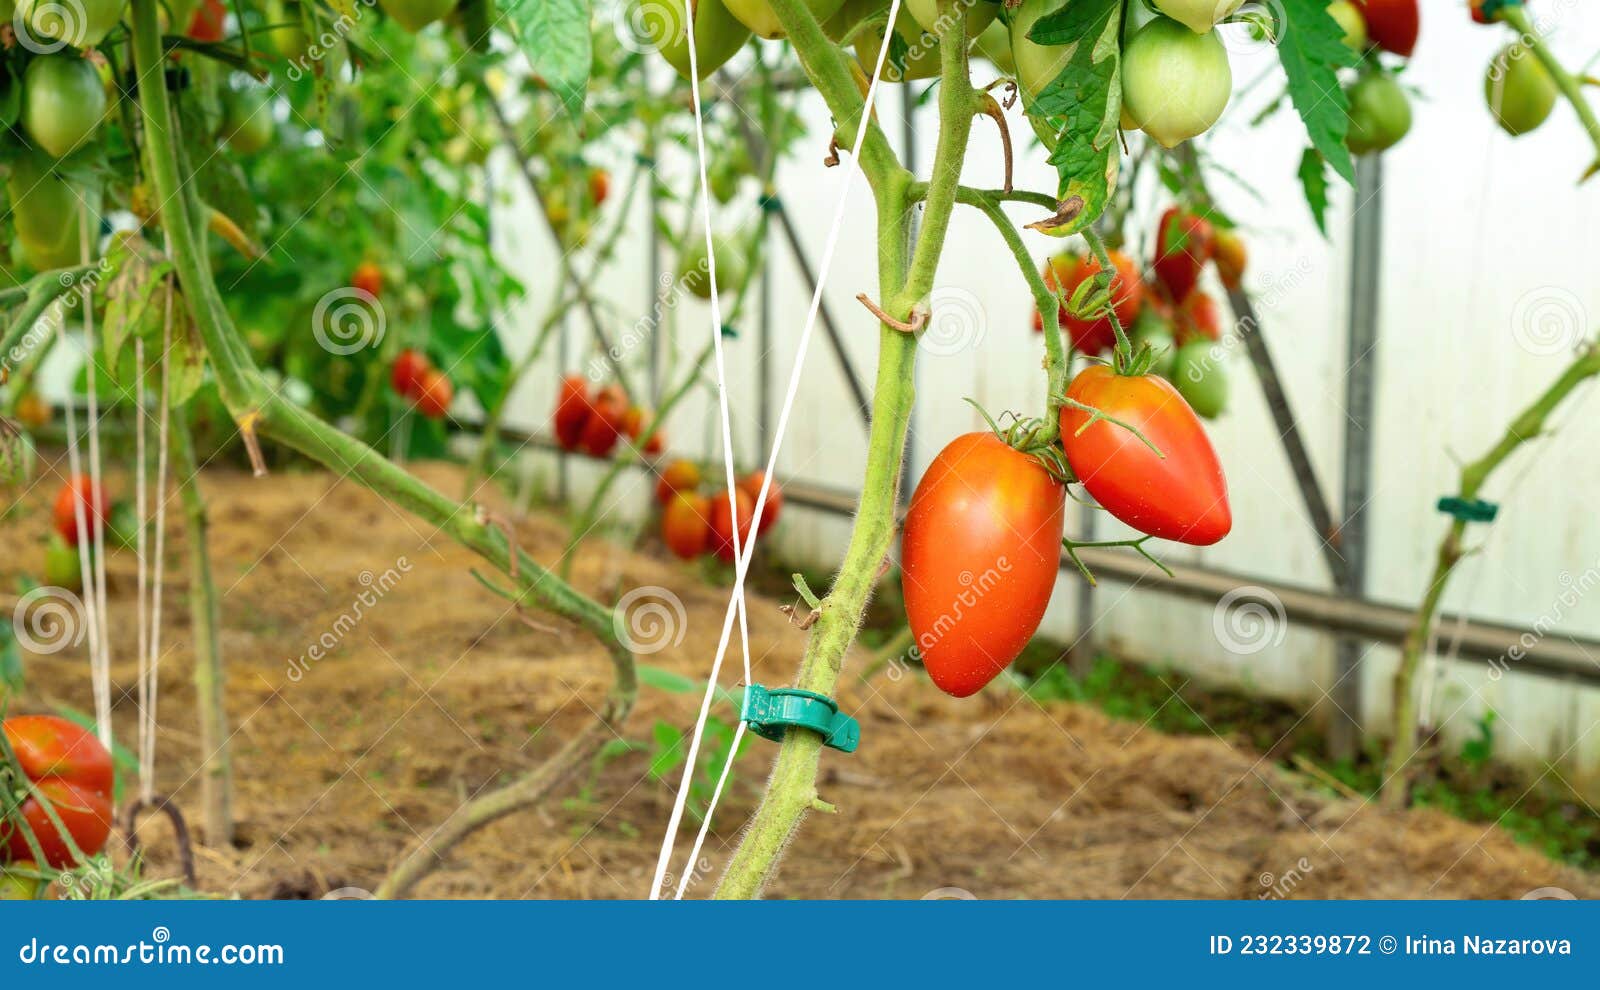 Cómo atar tomates en un invernadero de policarbonato.